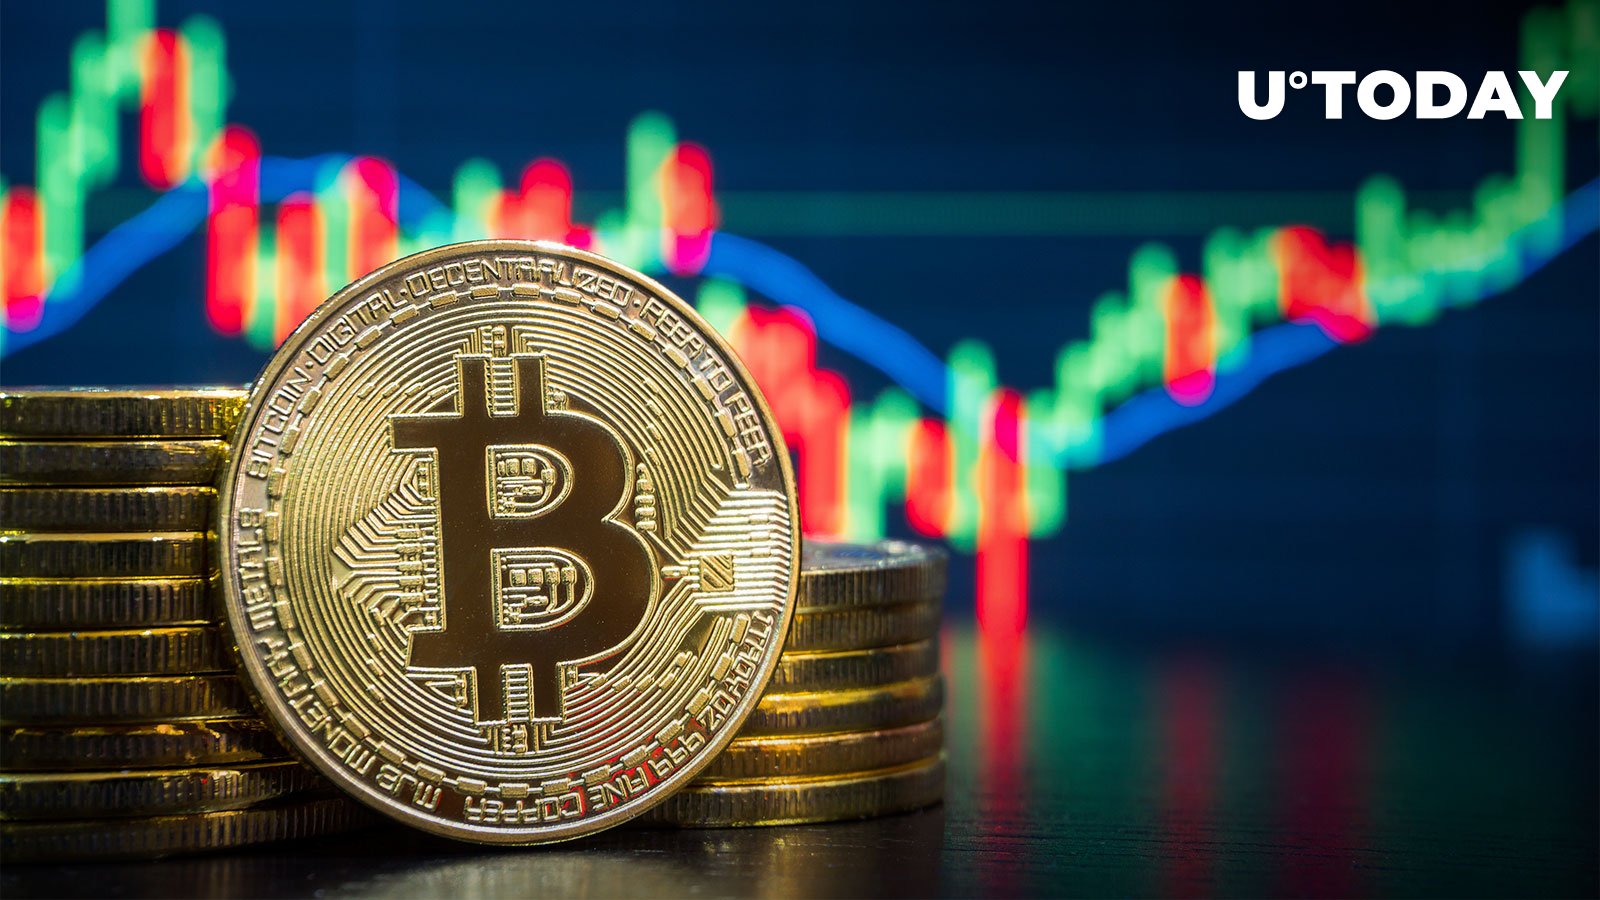 Investing-Ikone Mark Yusko prognostiziert den rasanten Anstieg von Bitcoin